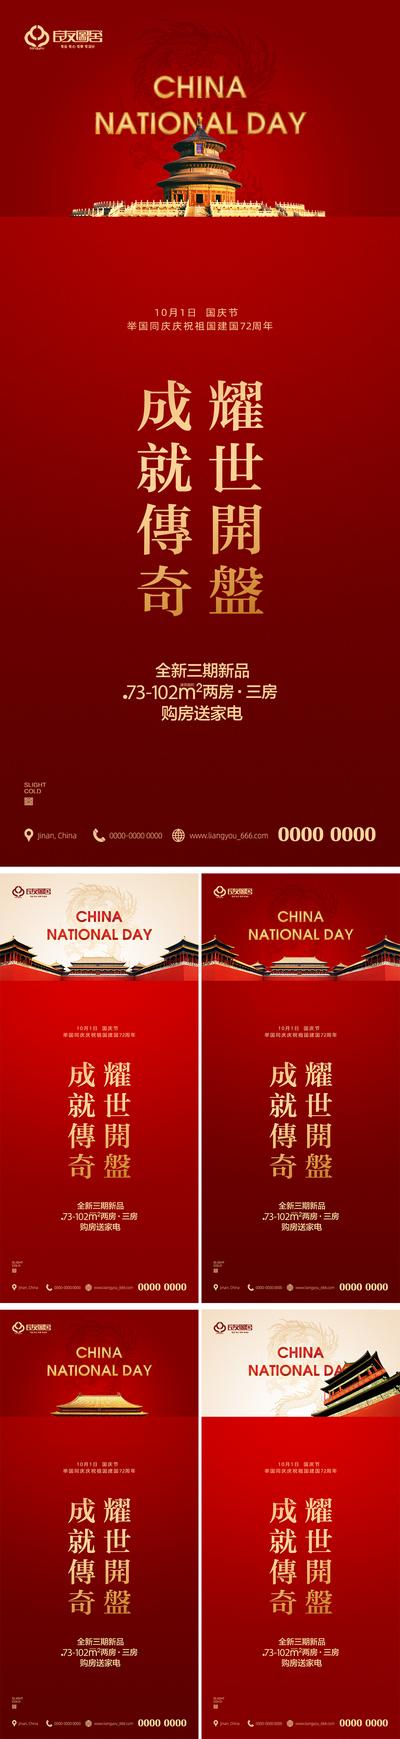 南门网 海报 公历节日  十一 国庆节 红金 天安门 系列